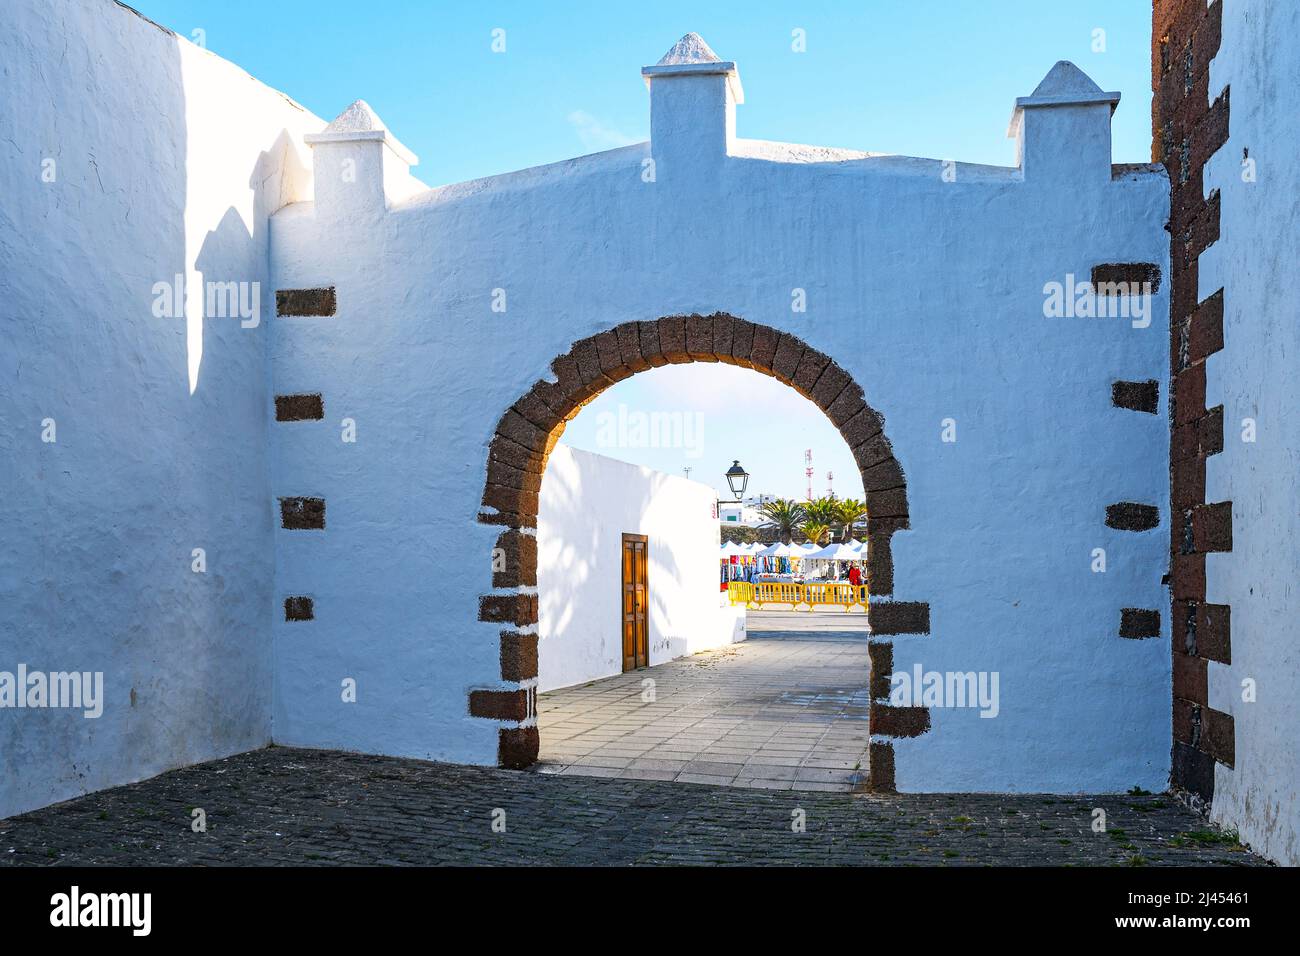 Gasse und Torbogen in der Altstadt von Teguise, ehemalige Haupstadt der Insel, Lanzarote, Kanarische Inseln, Spanien Stock Photo